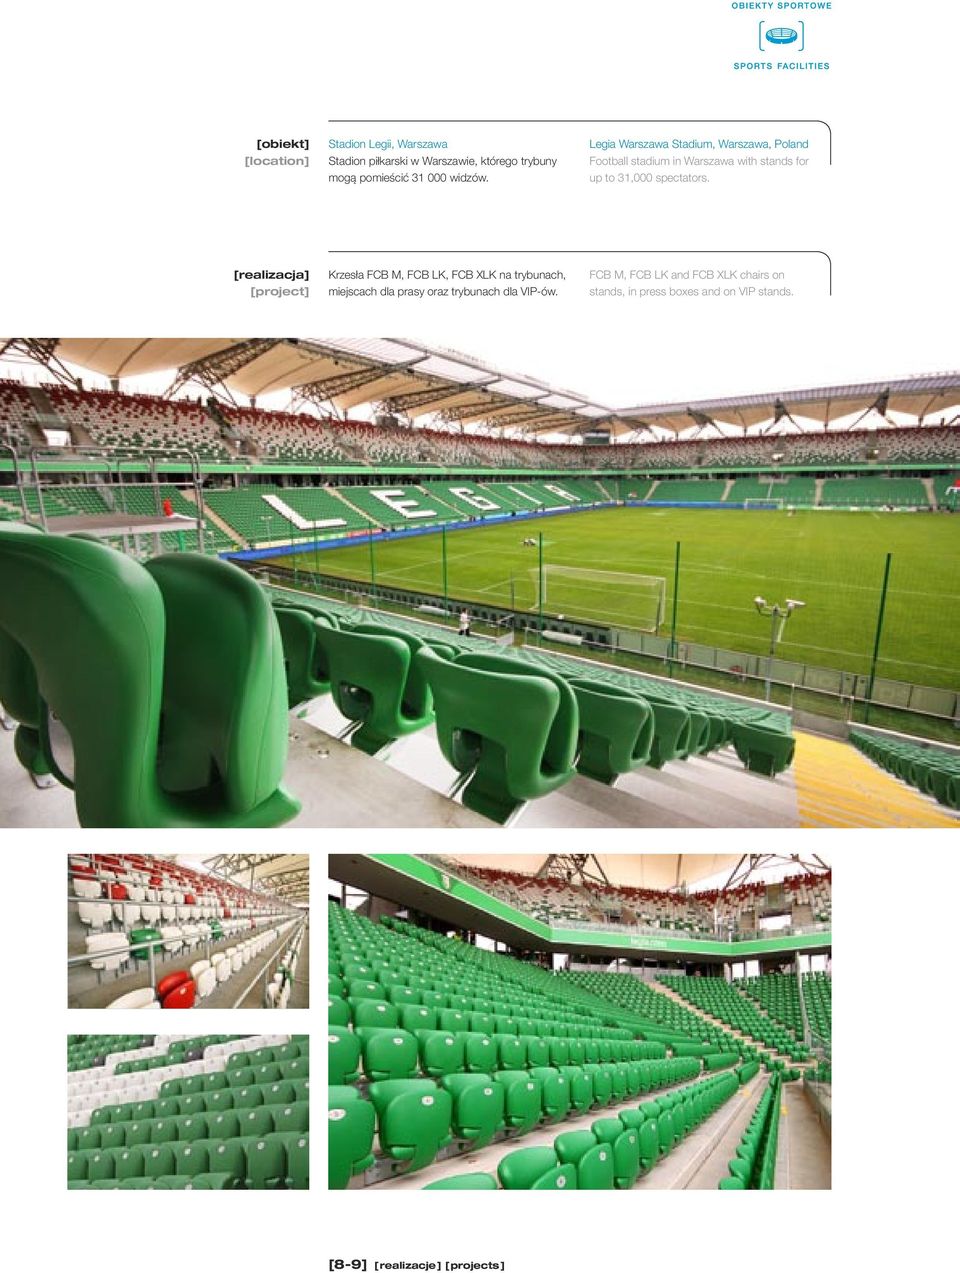 spectators. Krzesła FCB M, FCB LK, FCB XLK na trybunach, miejscach dla prasy oraz trybunach dla VIP-ów.